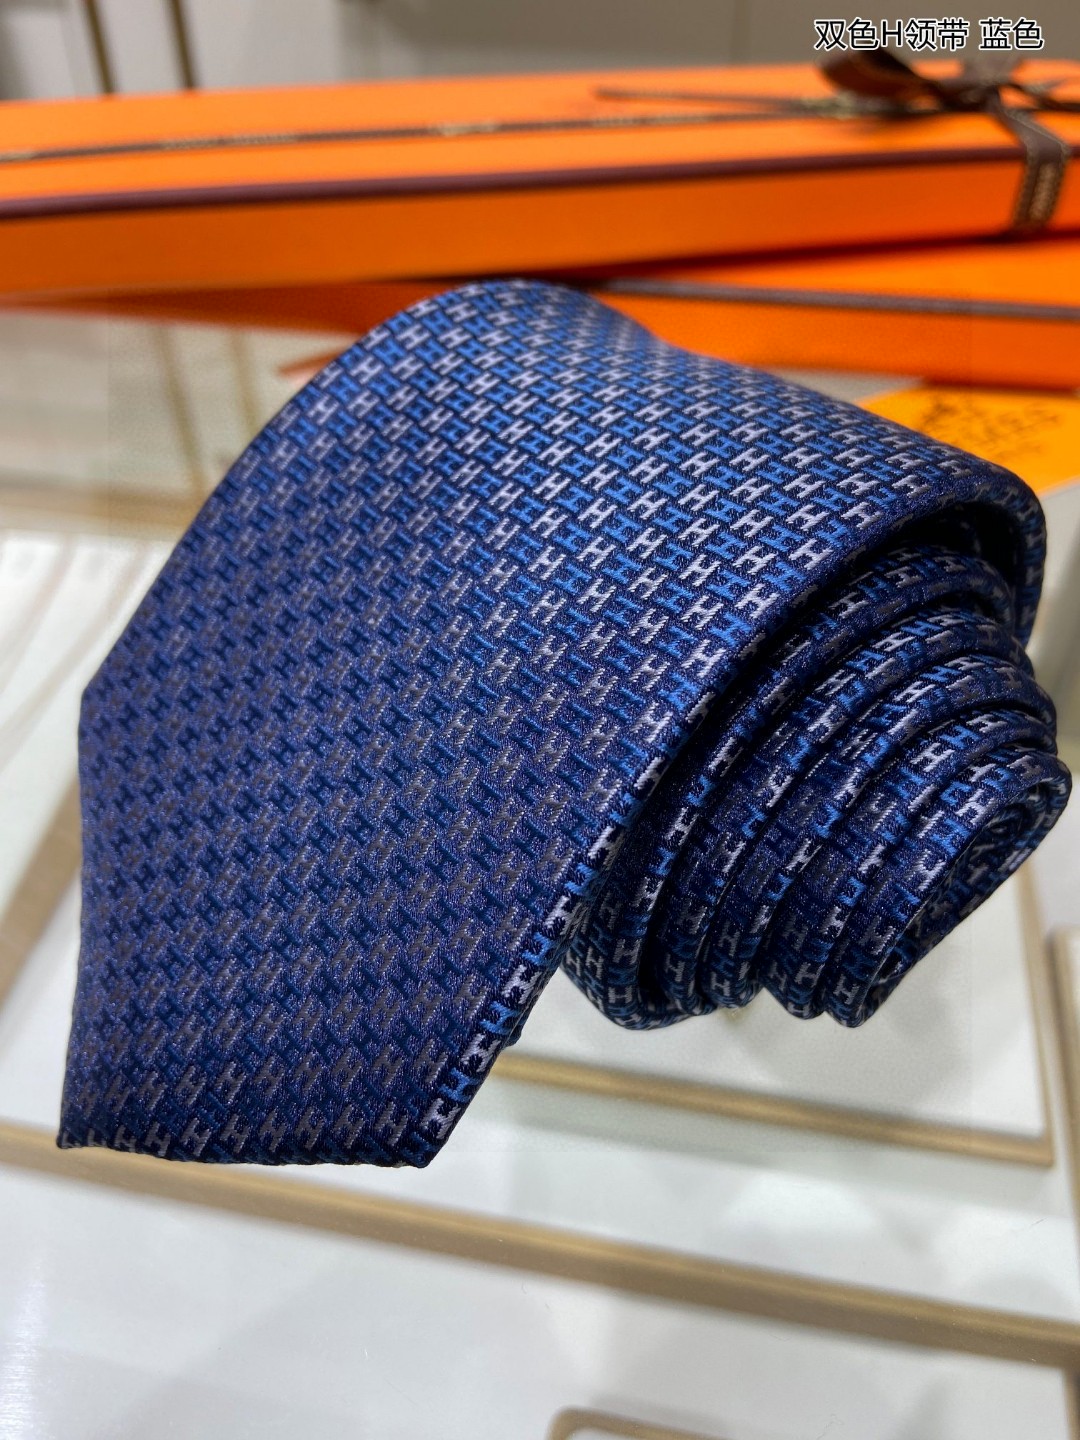 特价男士新款领带系列双色H领带稀有H家每年都有一千条不同印花的领带面世从最初的多以几何图案表现骑术活动为